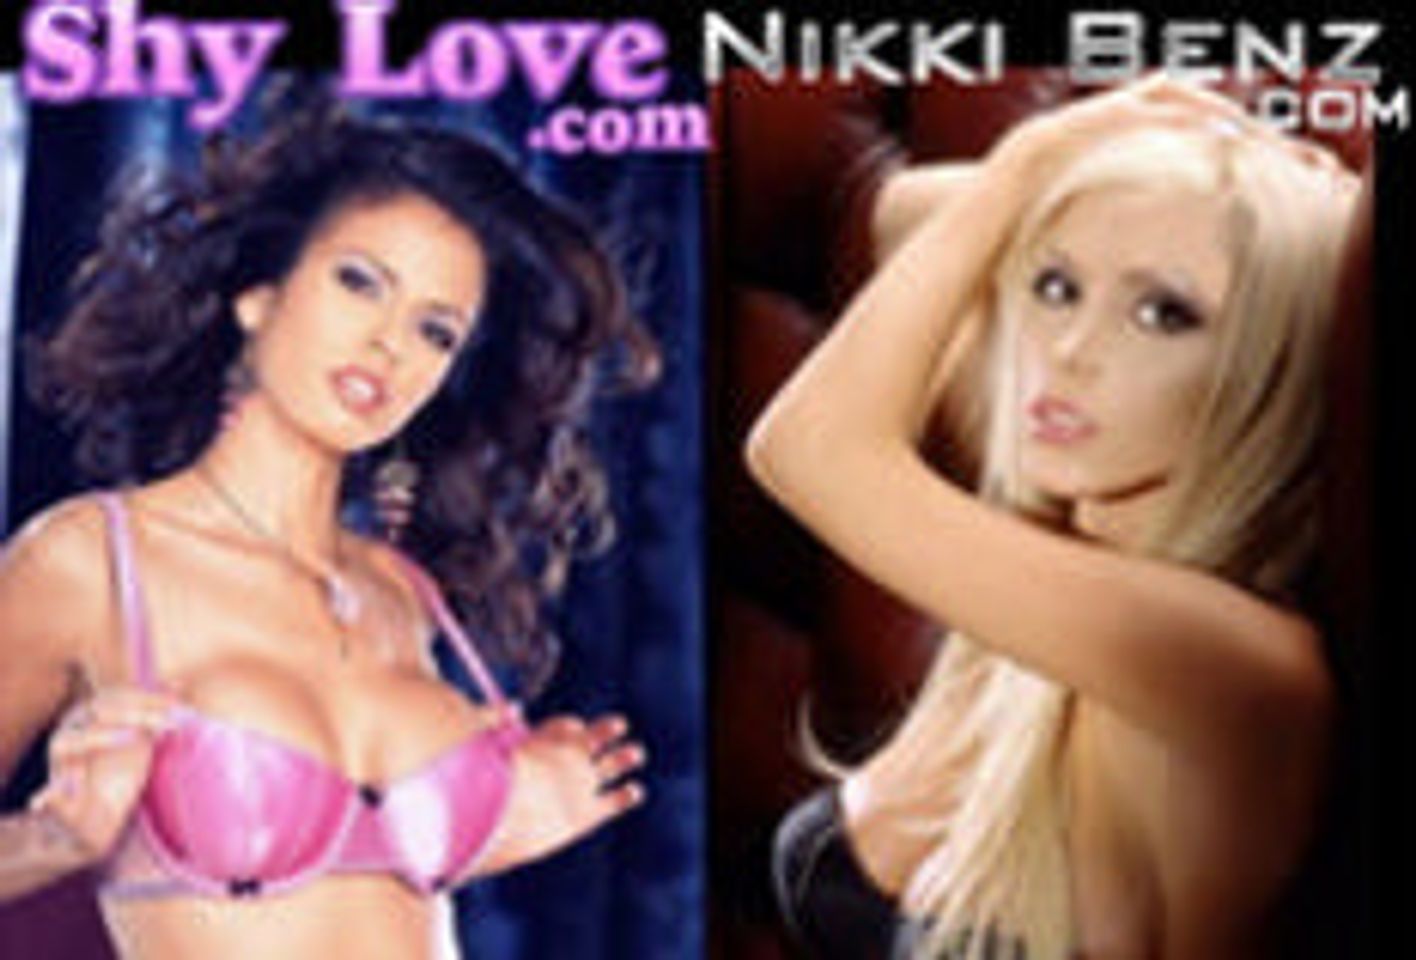 Shy Love, Nikki Benz Invade Chicago